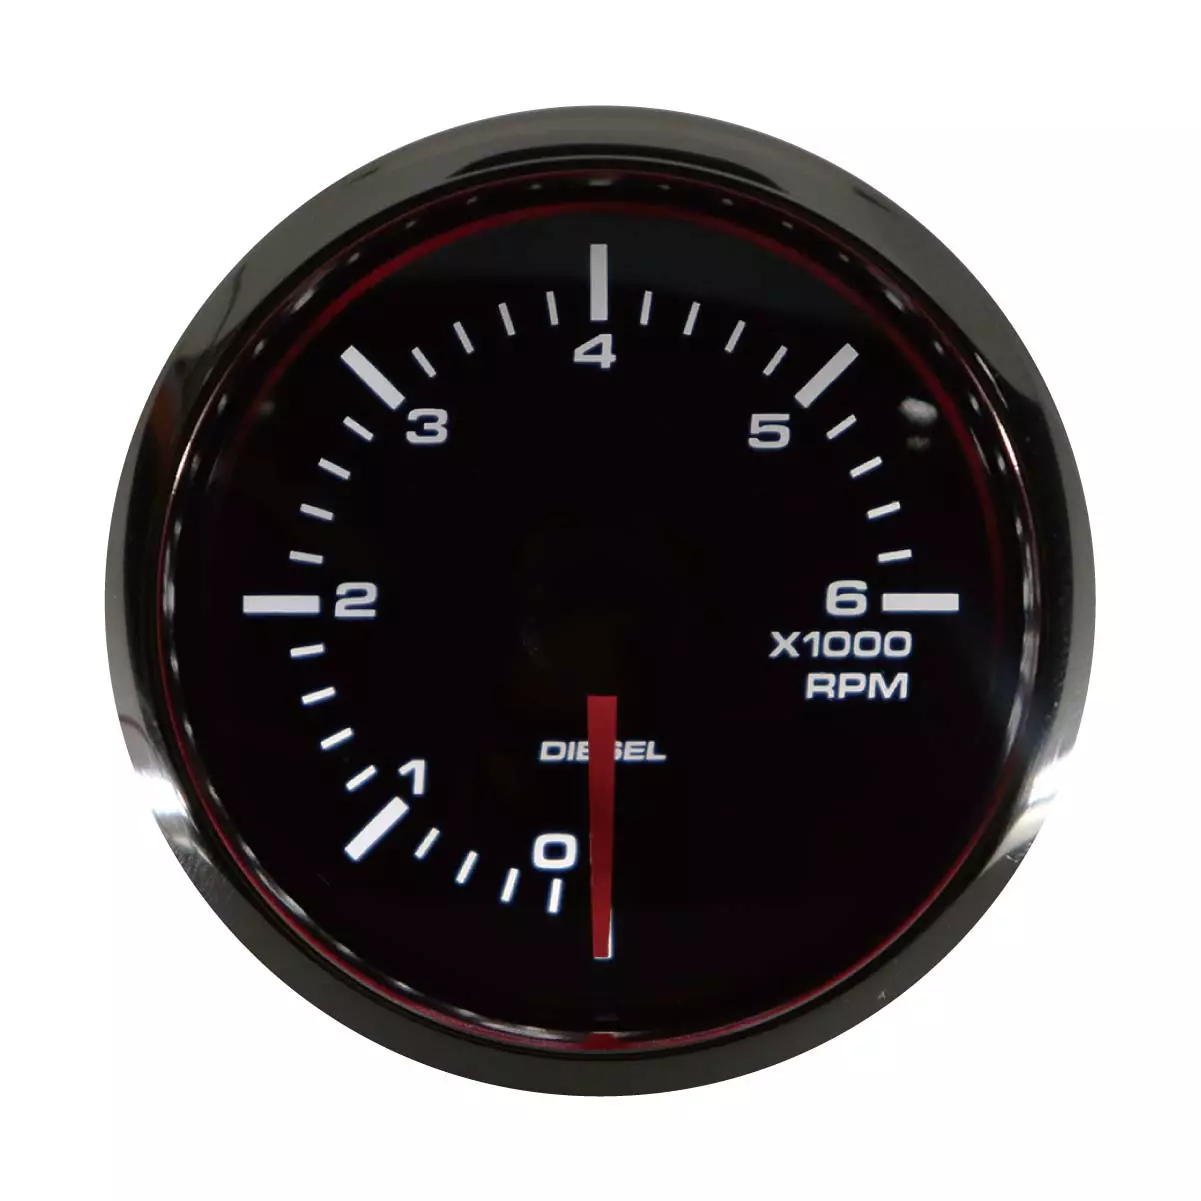 Universal Tachometer for Diesel Alternator 2" 6000 RPM Black Dial Chrome Bezel